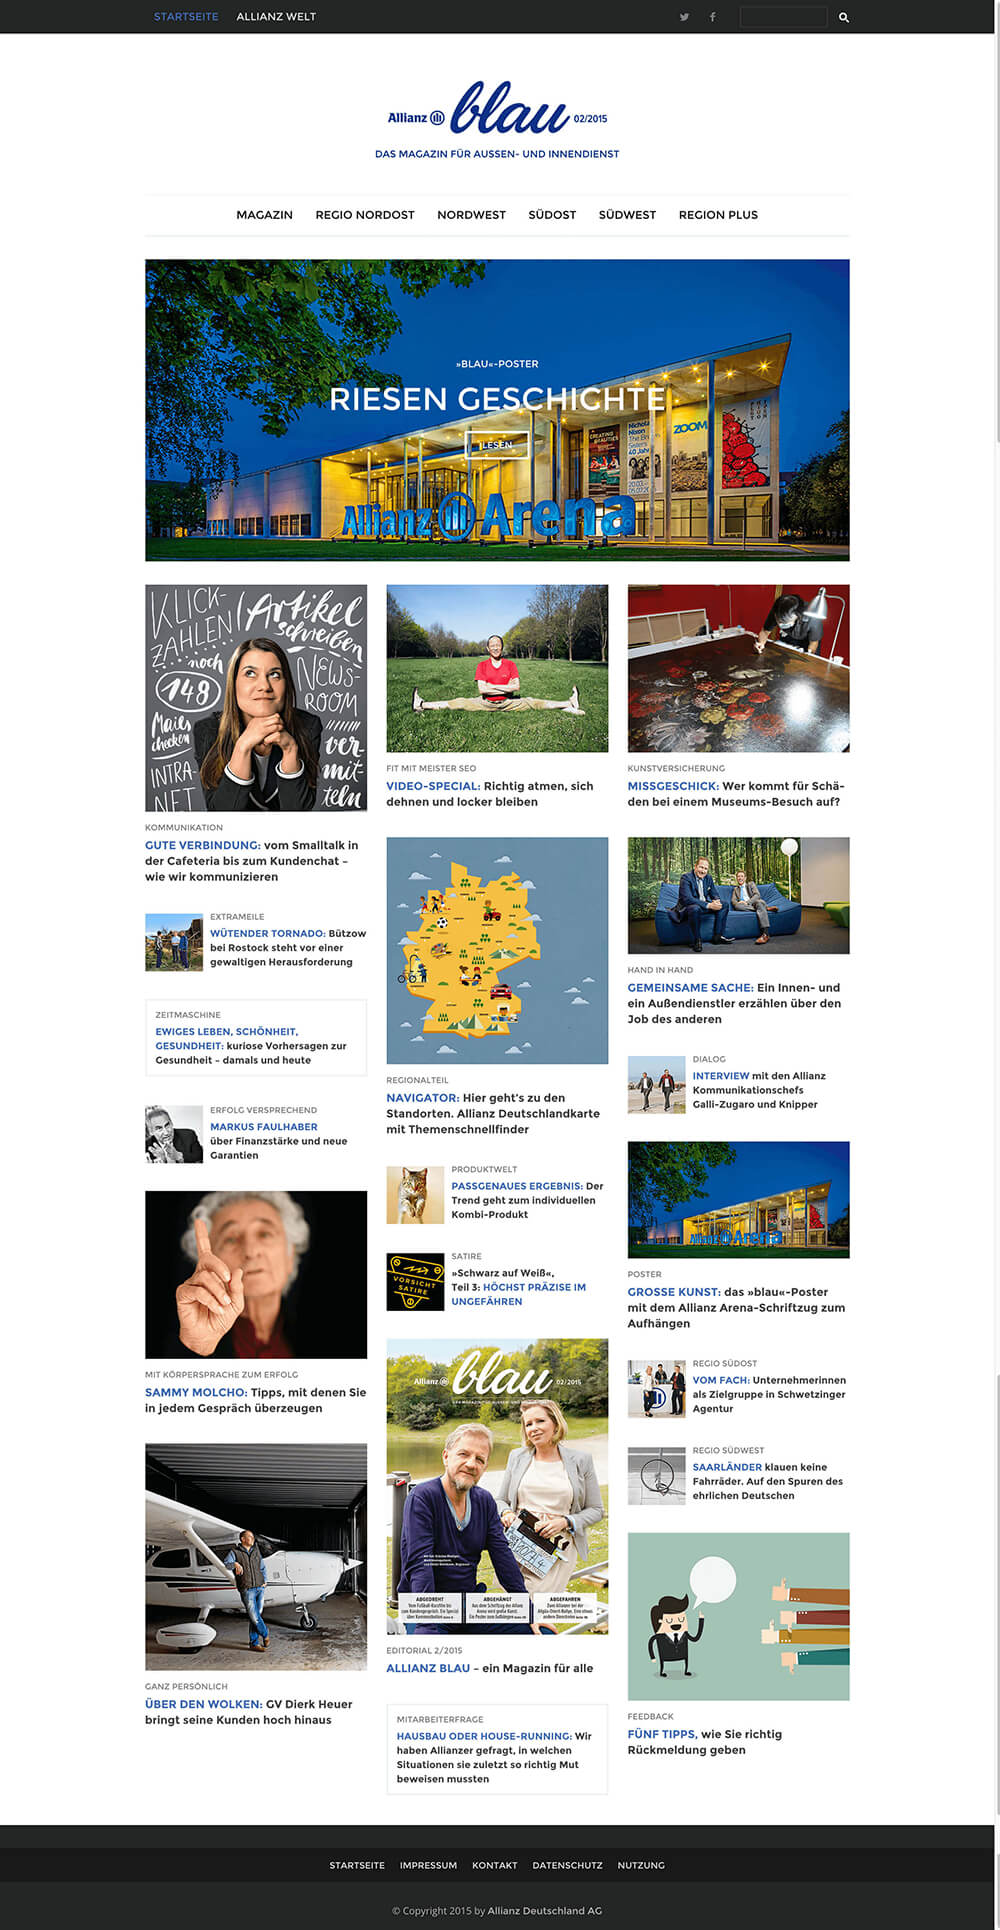 Allianz blau: ein Webmagazin für Mitarbeiter und Freunde der Marke